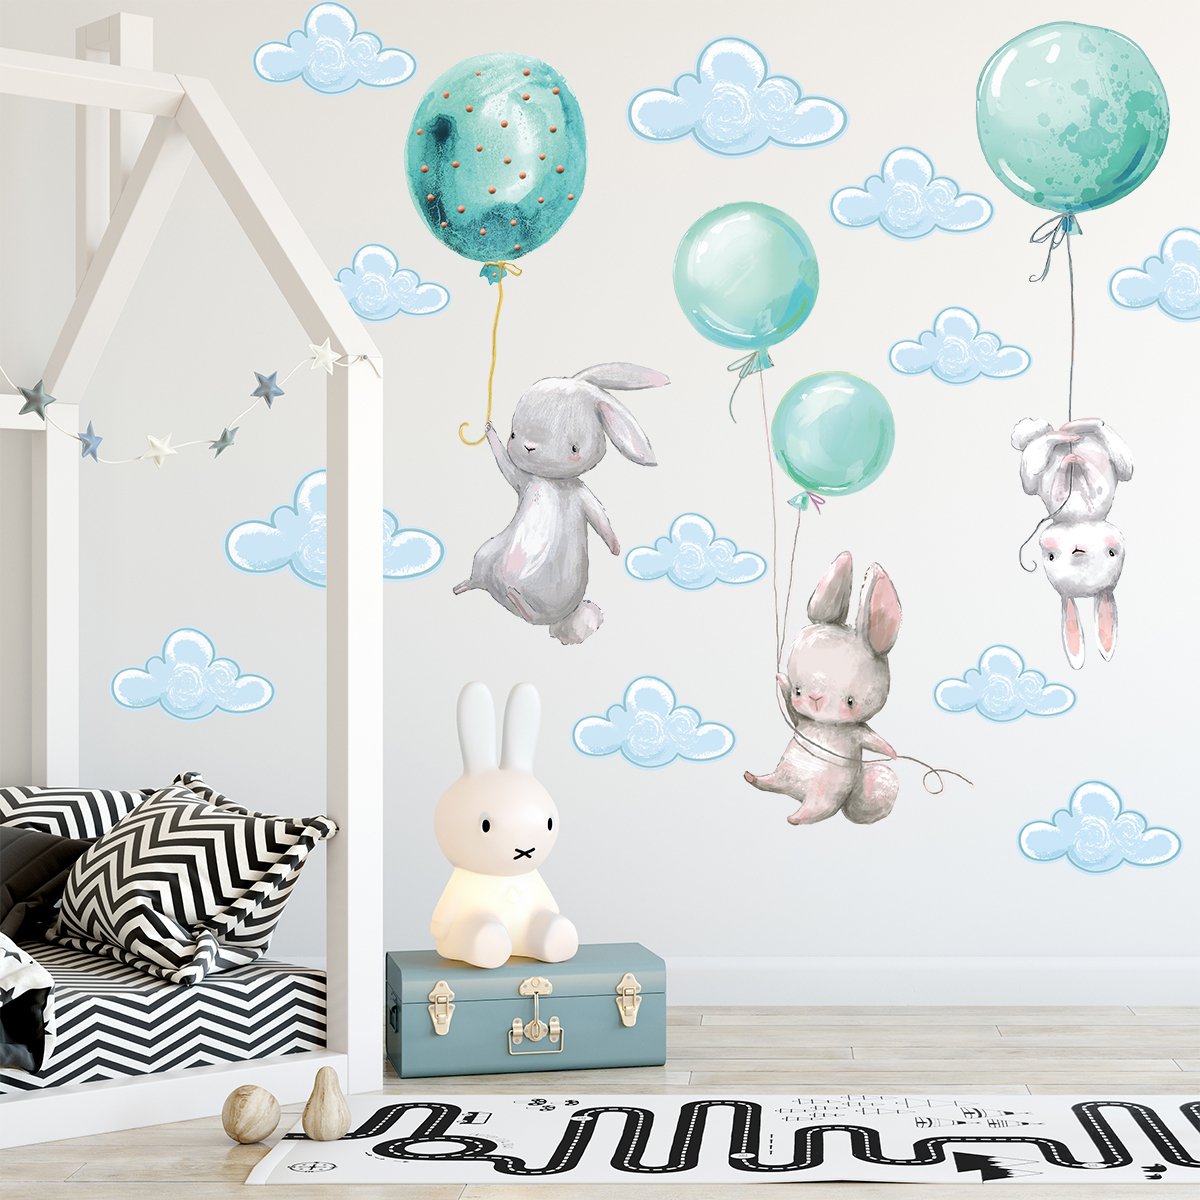 Naklejki na ścianę królik i latające miętowe baloniki#kolor_mietowy